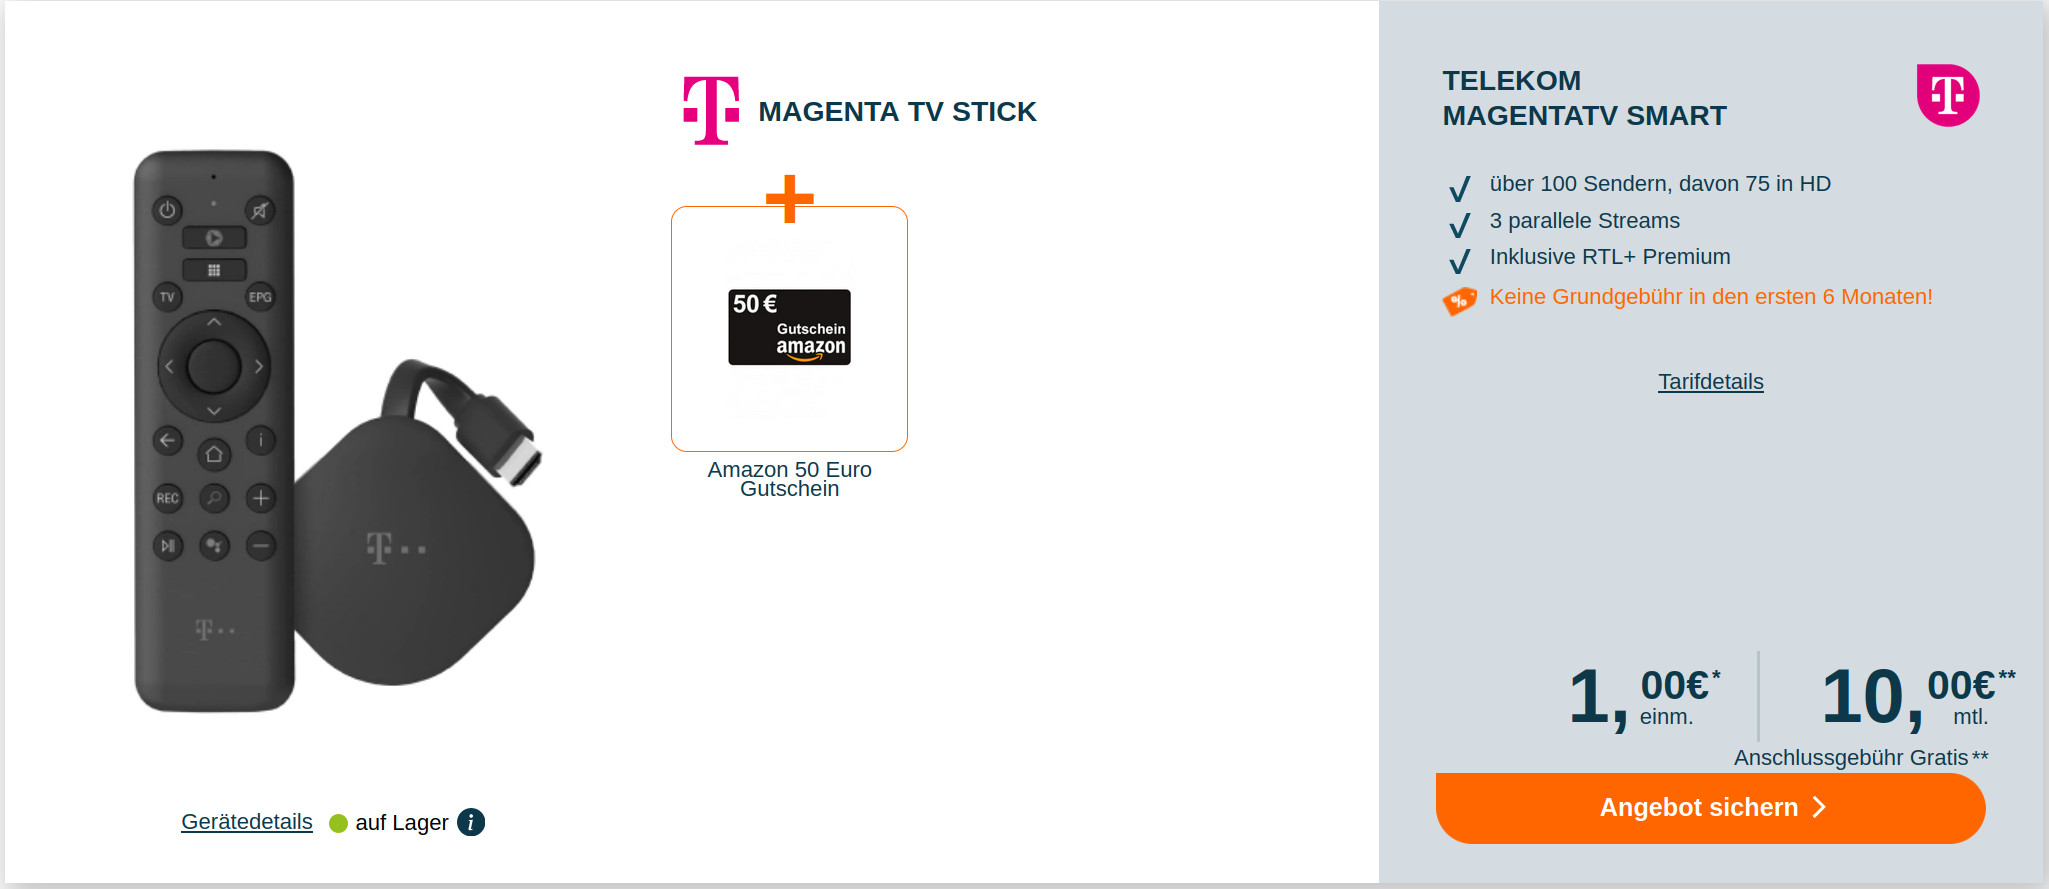 Sparangebot MagentaTV: 6 Monate gratis mit TV Stick --Danach Telekom MagentaTV Smart fr mtl. 10 Euro